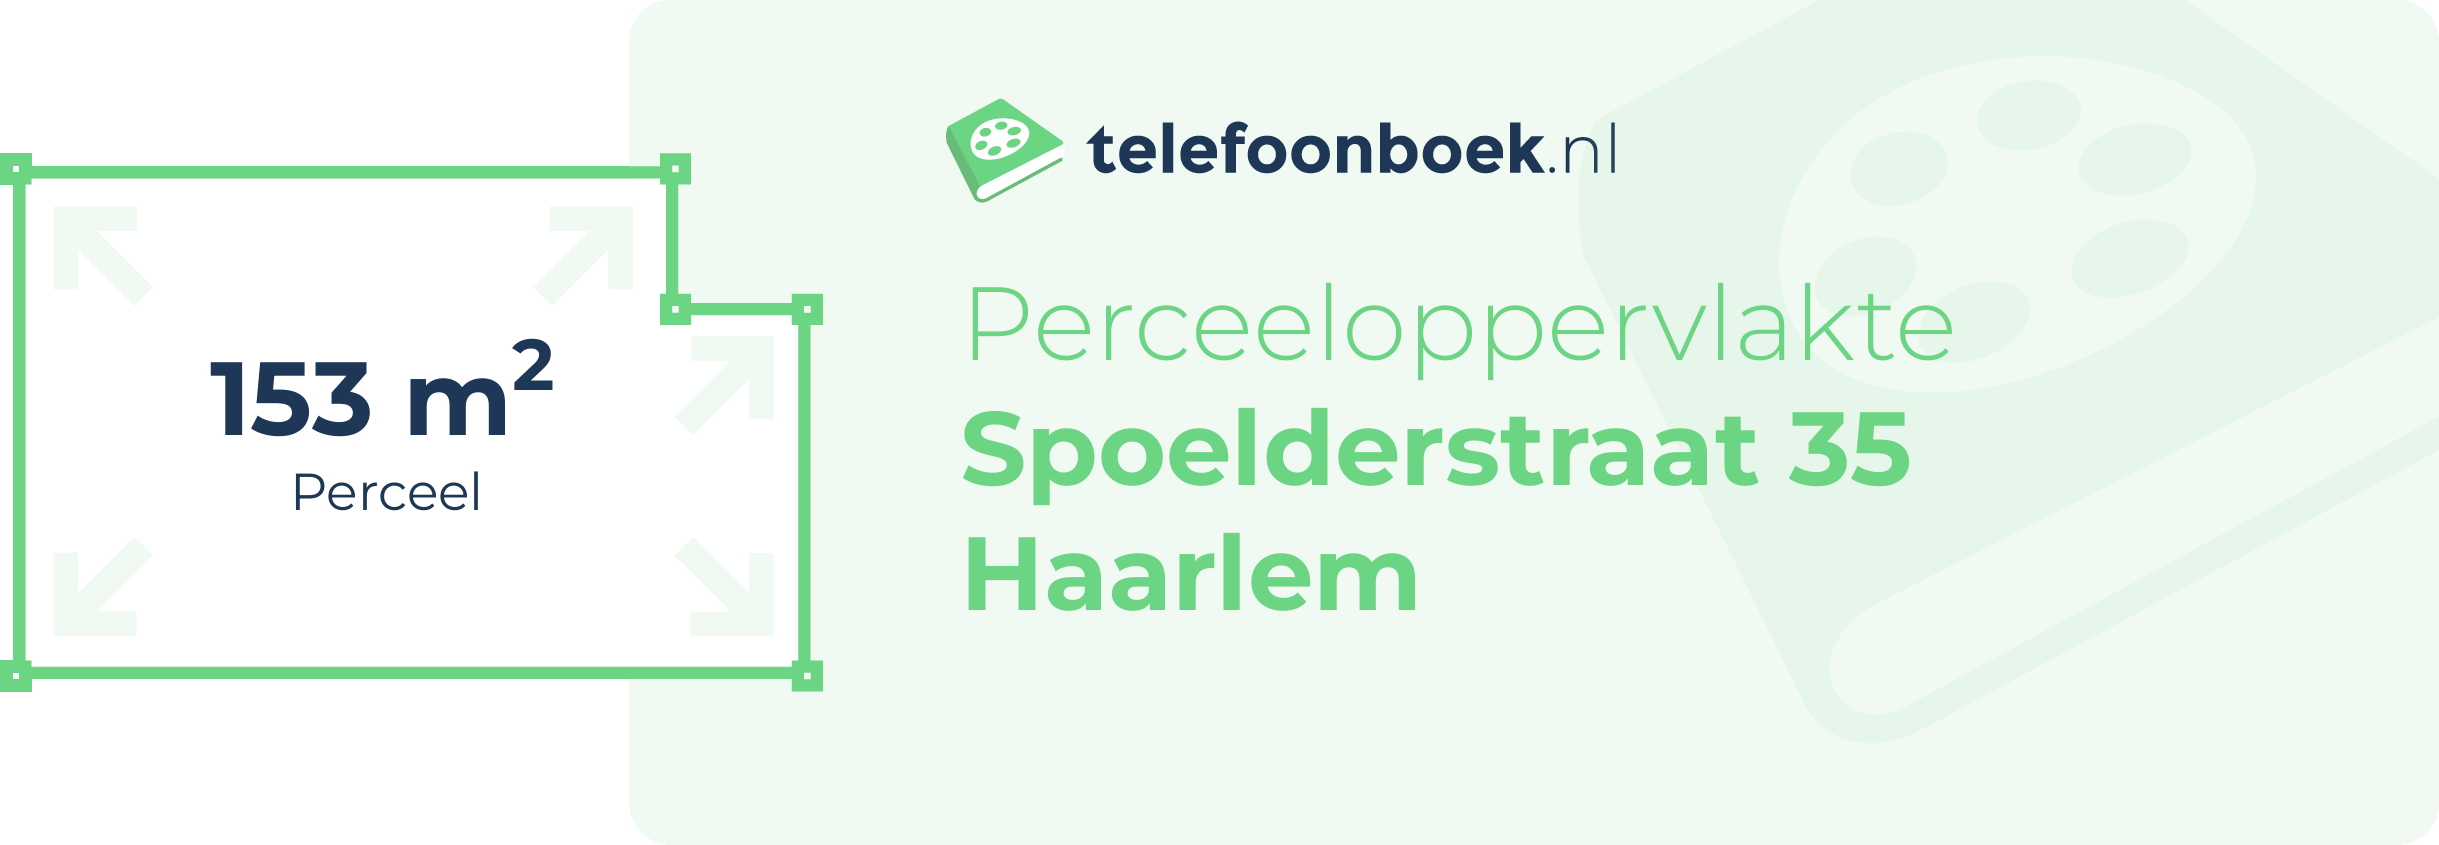 Perceeloppervlakte Spoelderstraat 35 Haarlem